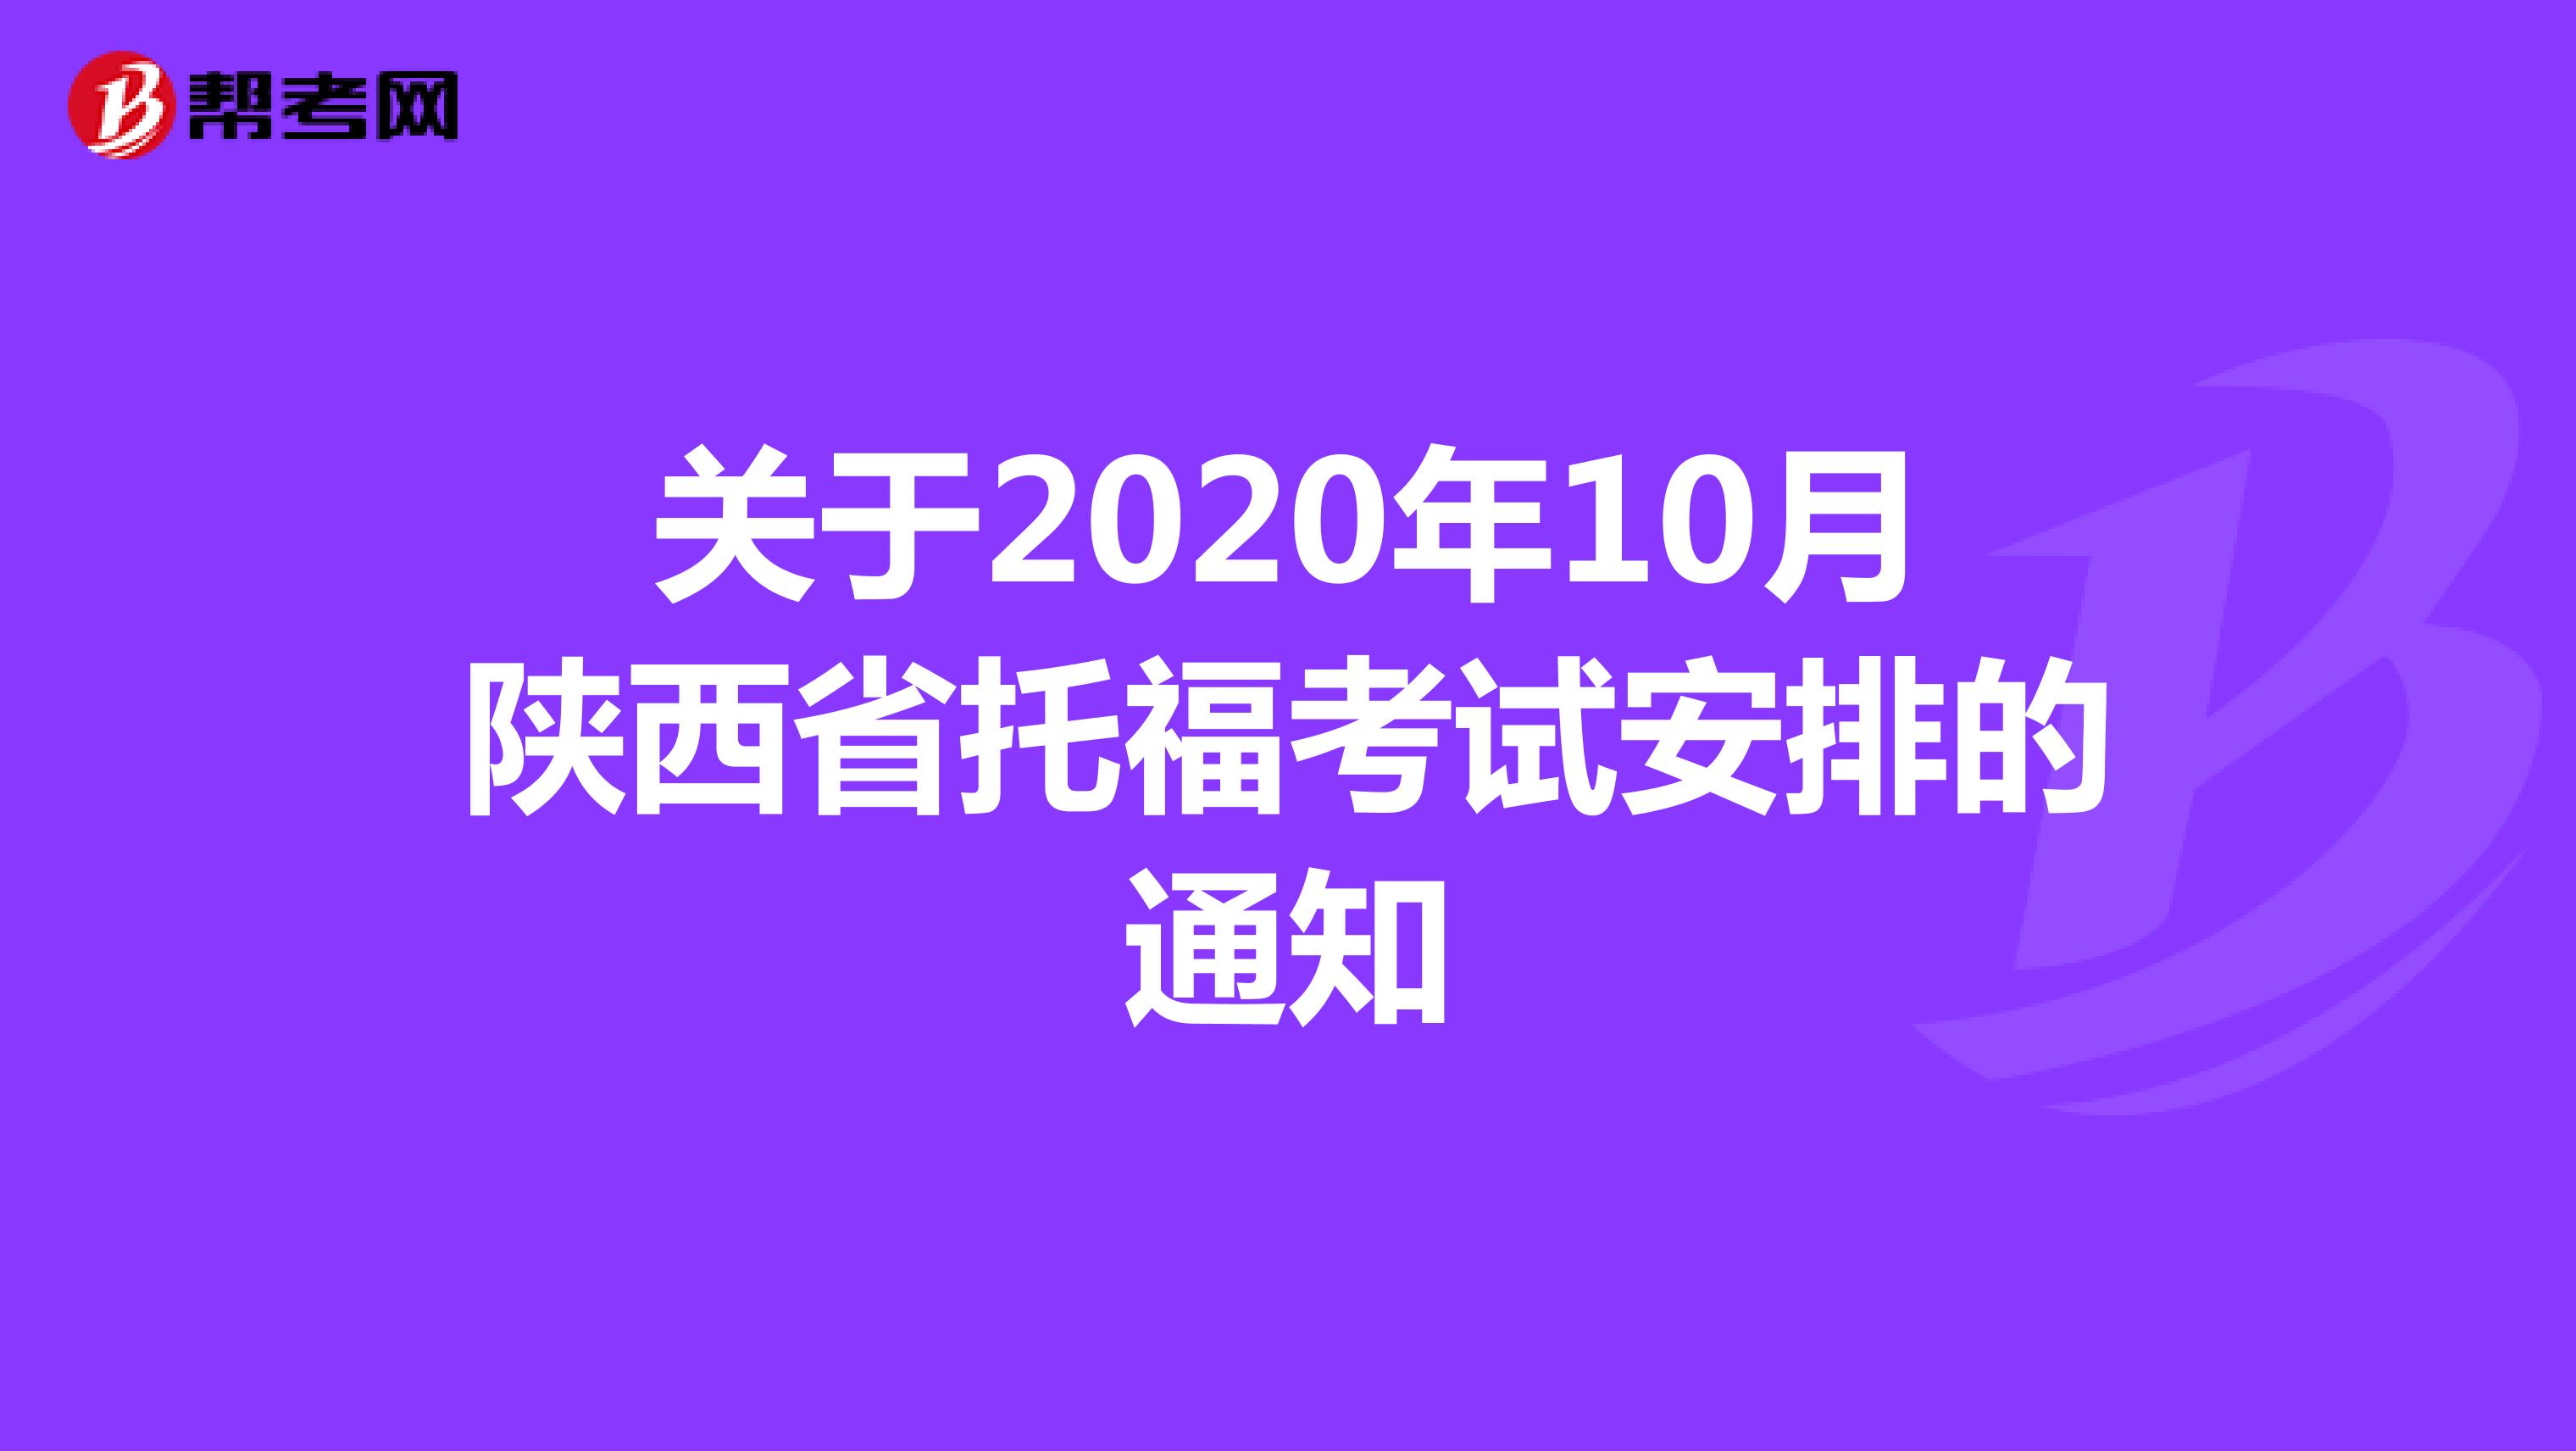 关于2020年10月陕西省托福考试安排的通知